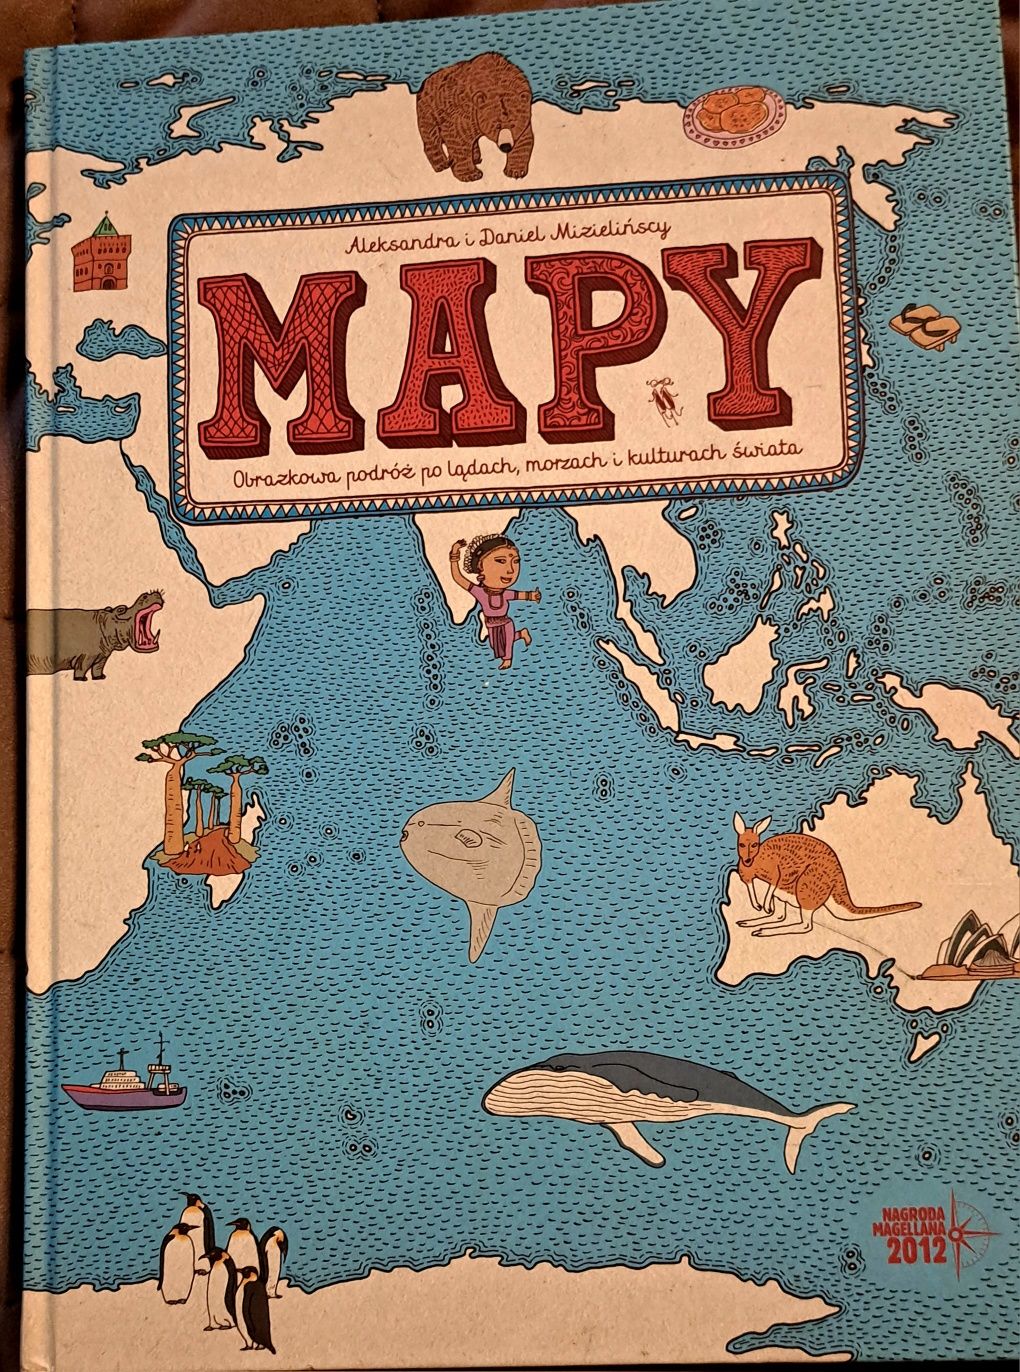 Mapy obrazkowa podróż po lądach, morzach i kulturach świata